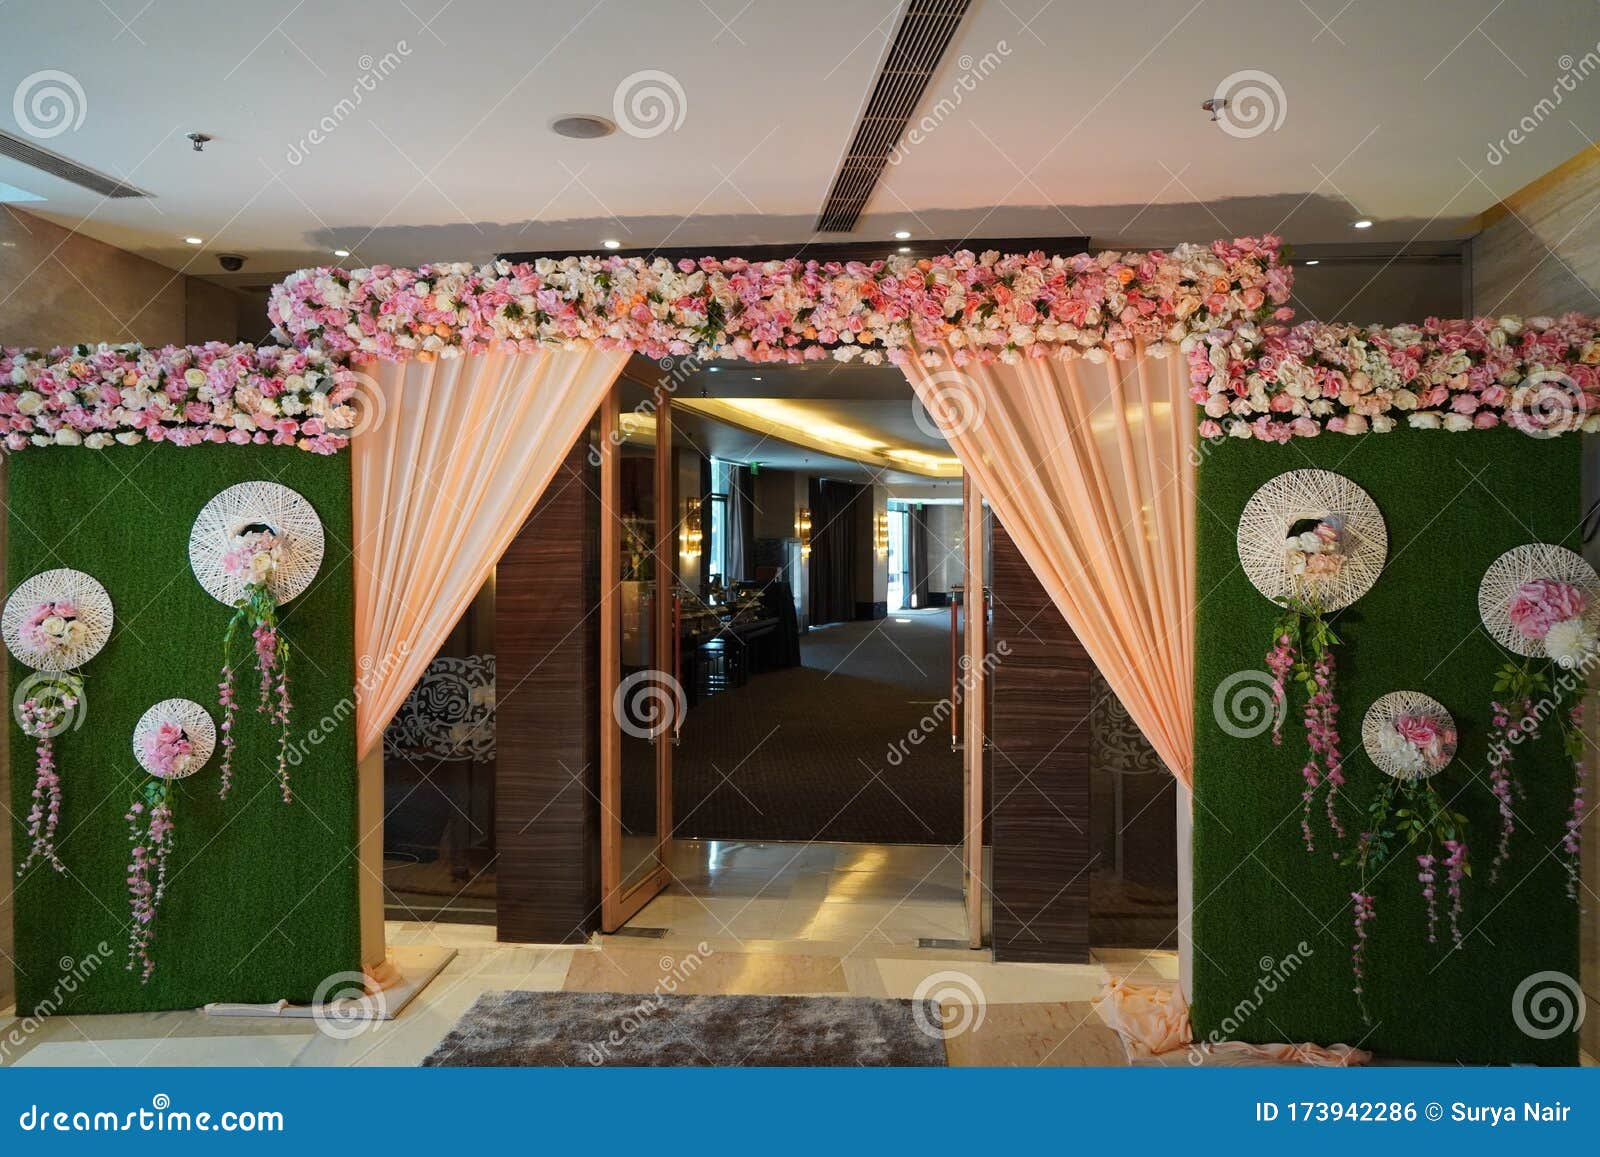 Floral Wedding Decoration Element. Lights, Entrance Gate, Shower ...